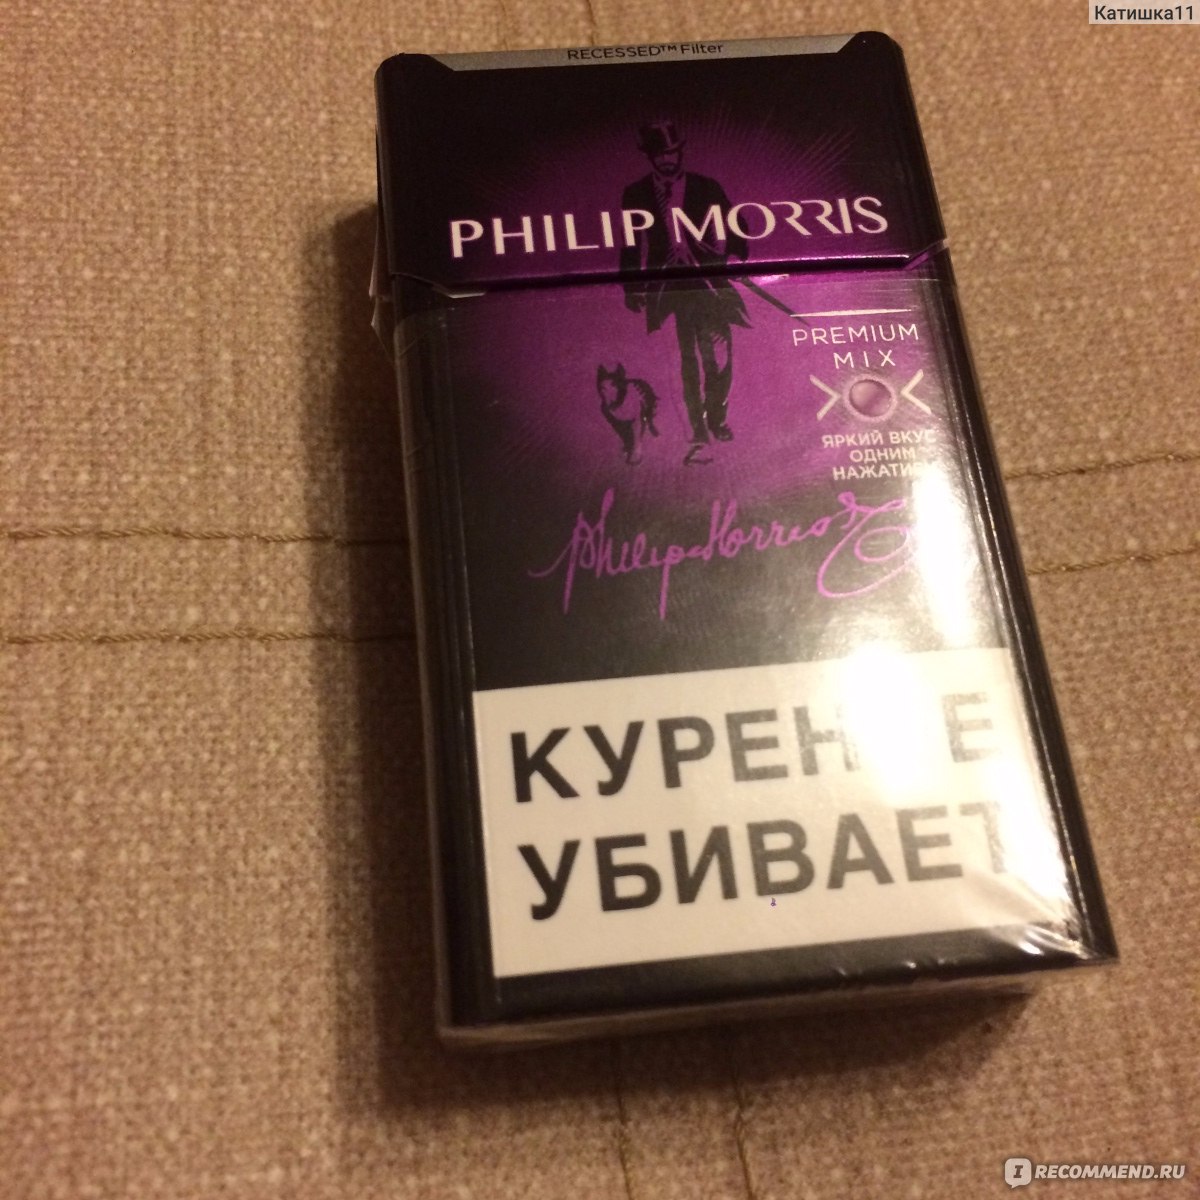 Филип моррис фиолетовый. Сигареты Филип Моррис с кнопкой. Сигареты Филип Моррис с кнопкой фиолетовой. Сигареты Philip Morris с фиолетовой кнопкой.